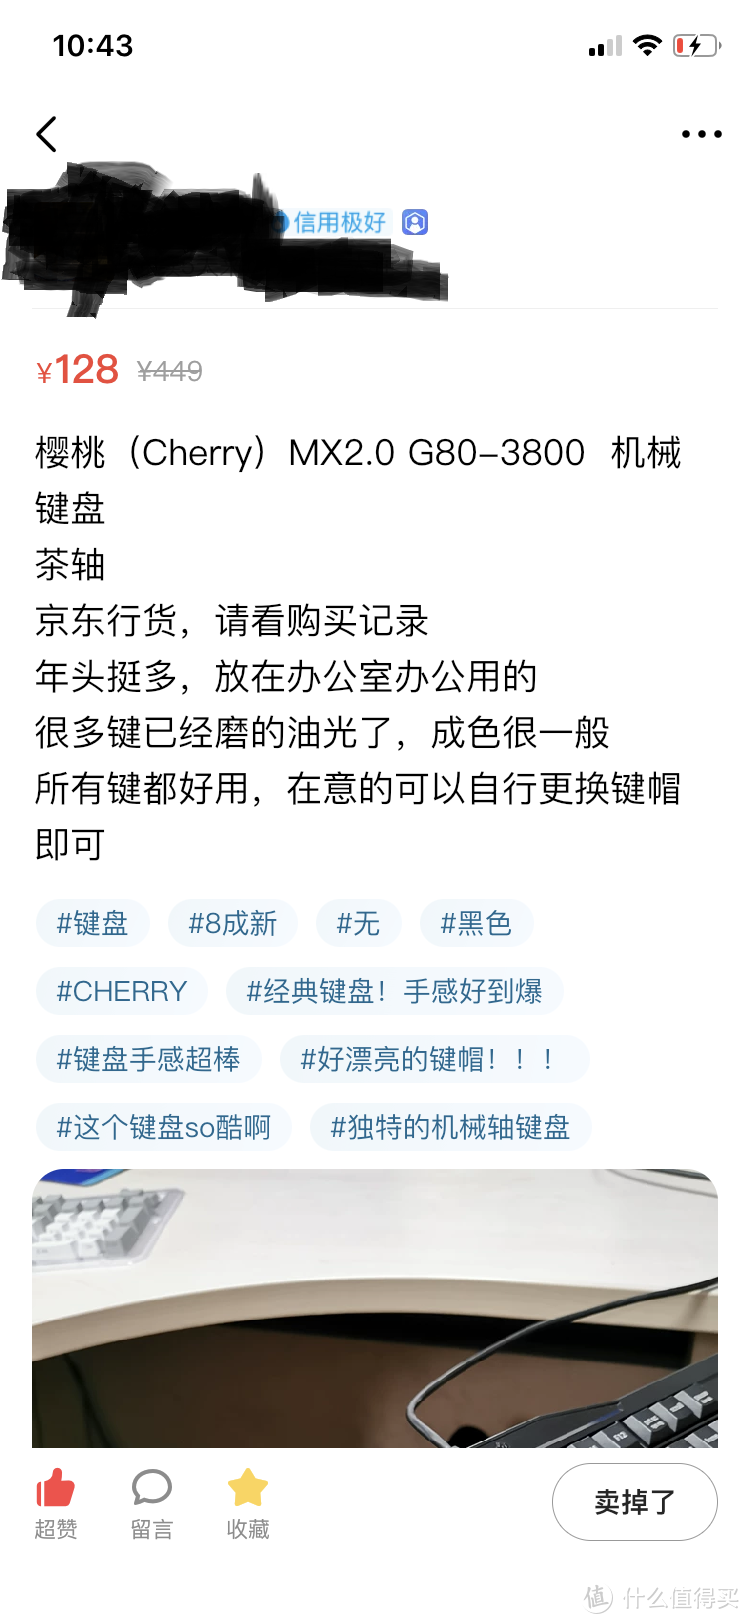 图书馆猿の二手 樱桃 (Cherry) MX2.0 G80-3800 机械键盘 简单晒